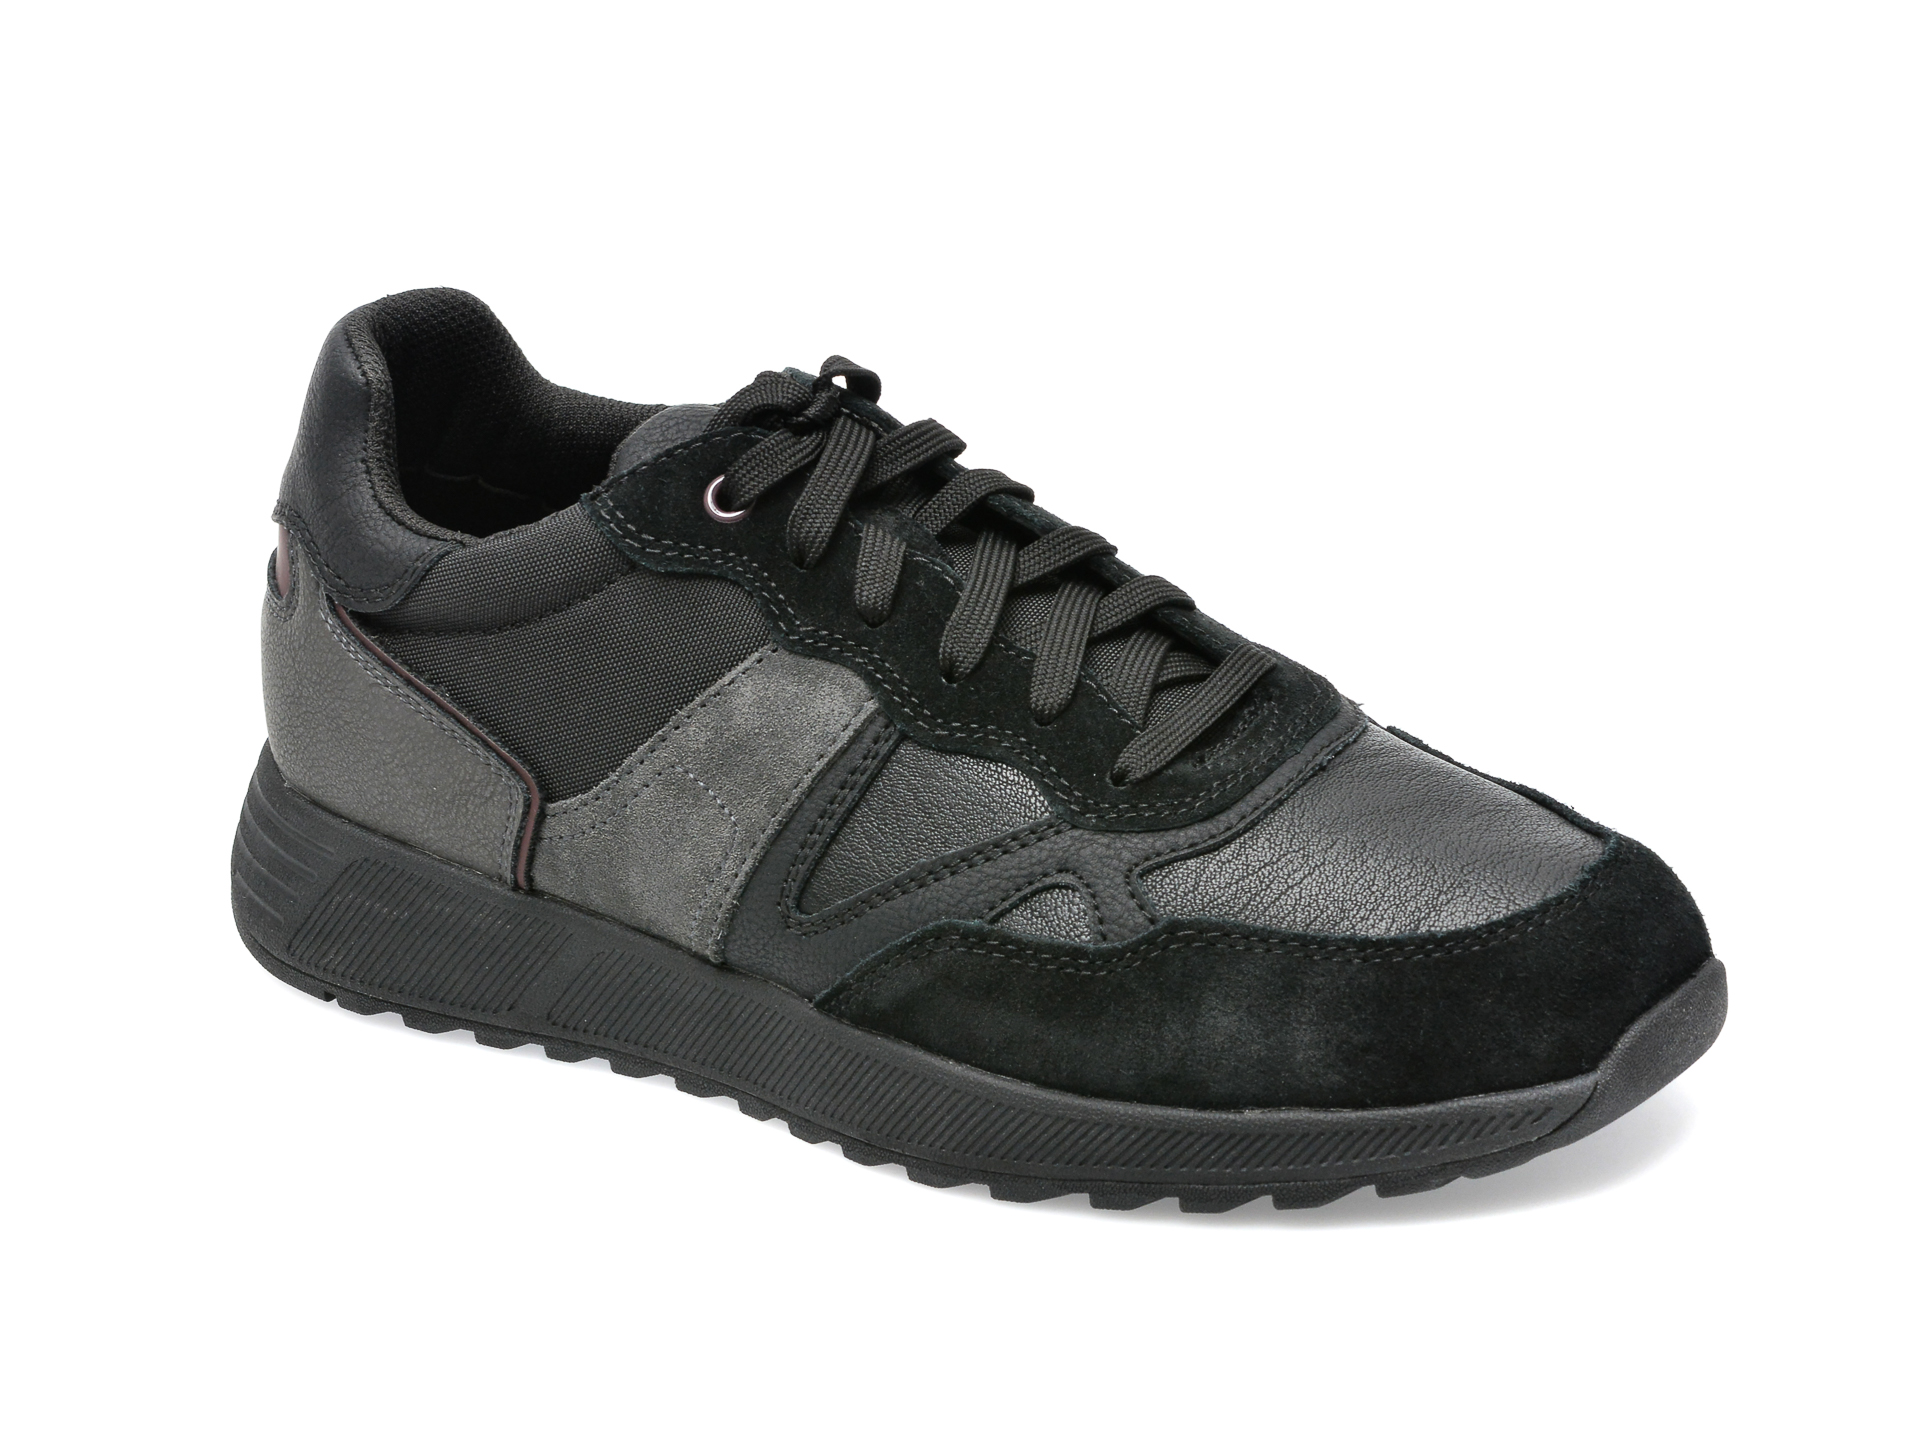 Pantofi sport GEOX negri, U26F1A, din piele naturala barbati 2023-03-20